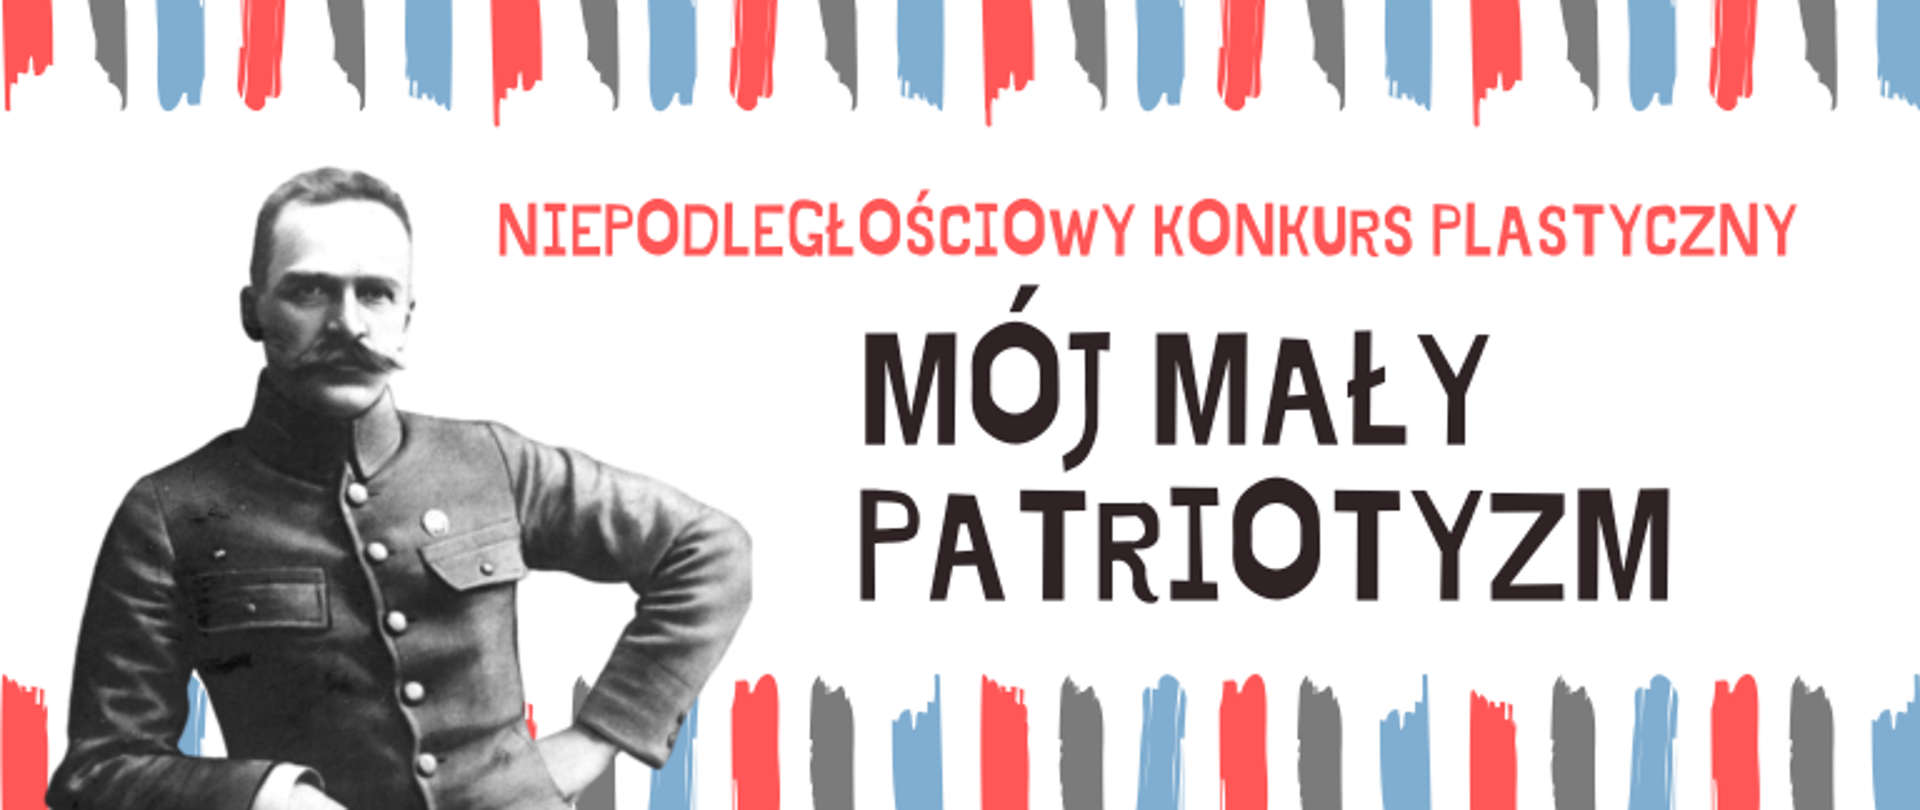 Plansza informująca o treści - Konkurs plastyczny: MÓJ MAŁY PATRIOTYZM. Na białym tle widoczny Marszałek Józef Piłsudski